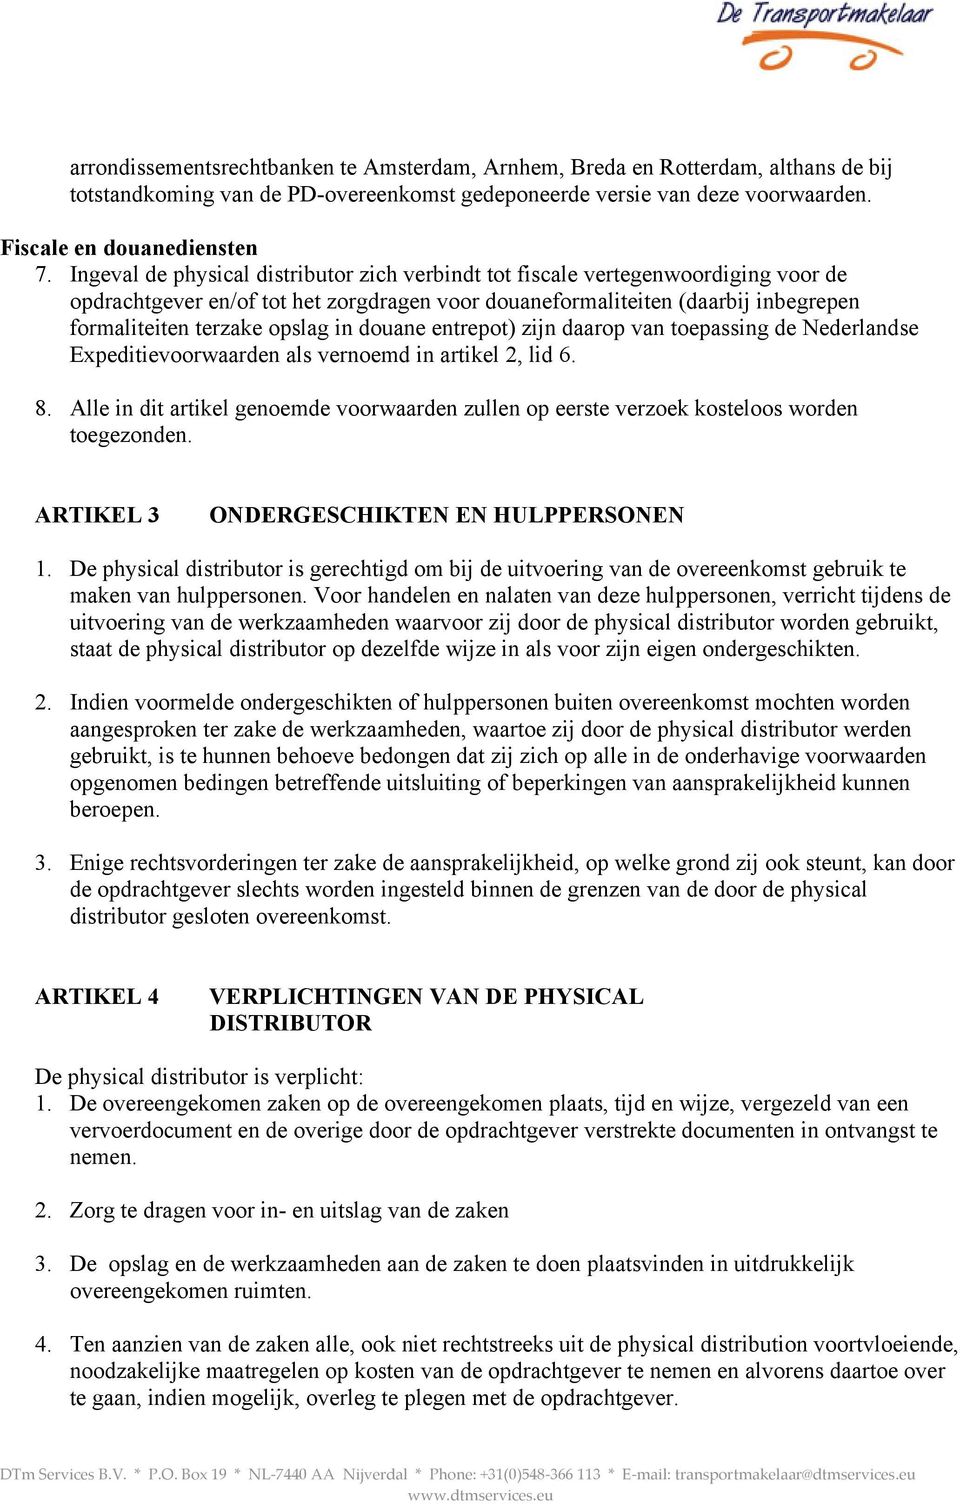 in douane entrepot) zijn daarop van toepassing de Nederlandse Expeditievoorwaarden als vernoemd in artikel 2, lid 6. 8.